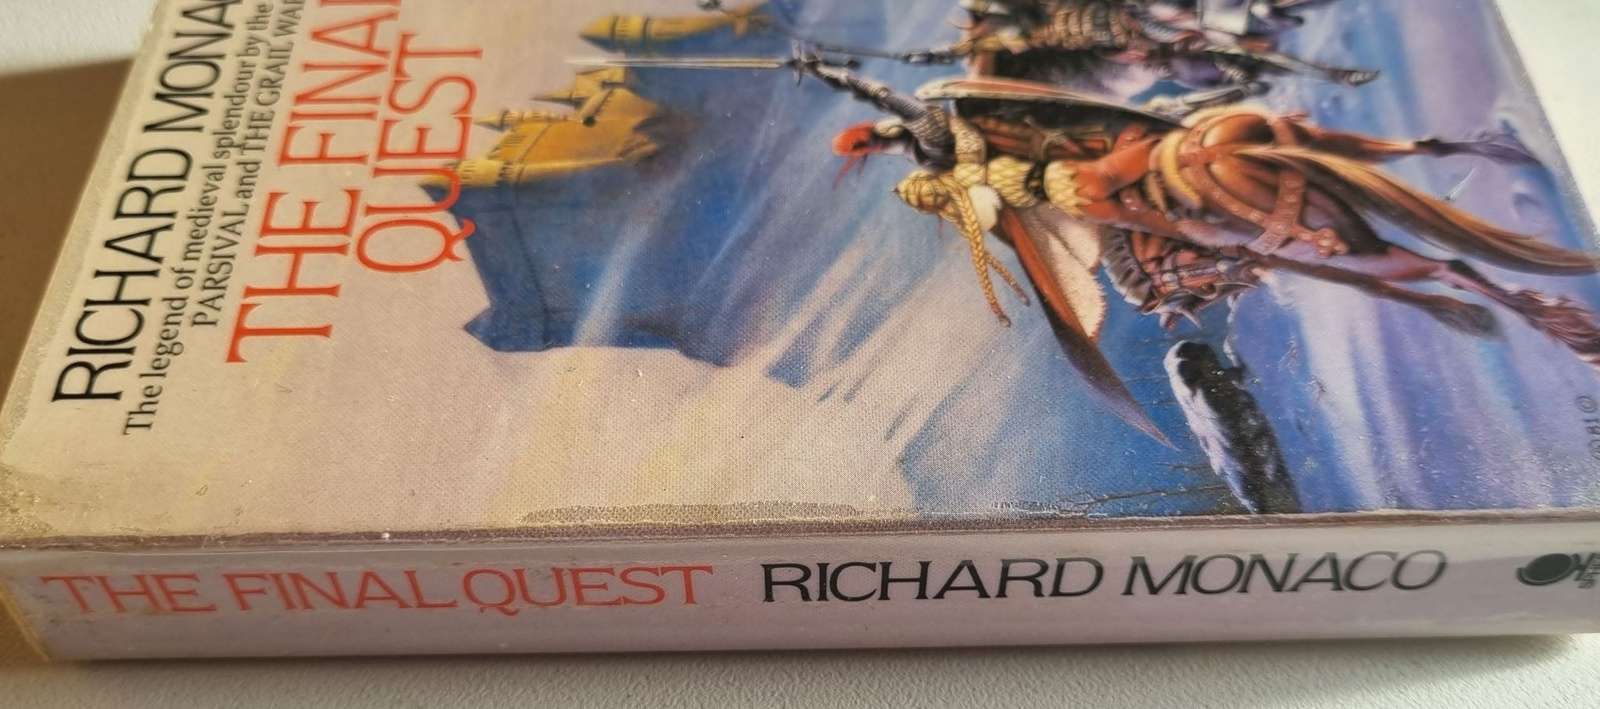 The Final Quest - Richard Monaco